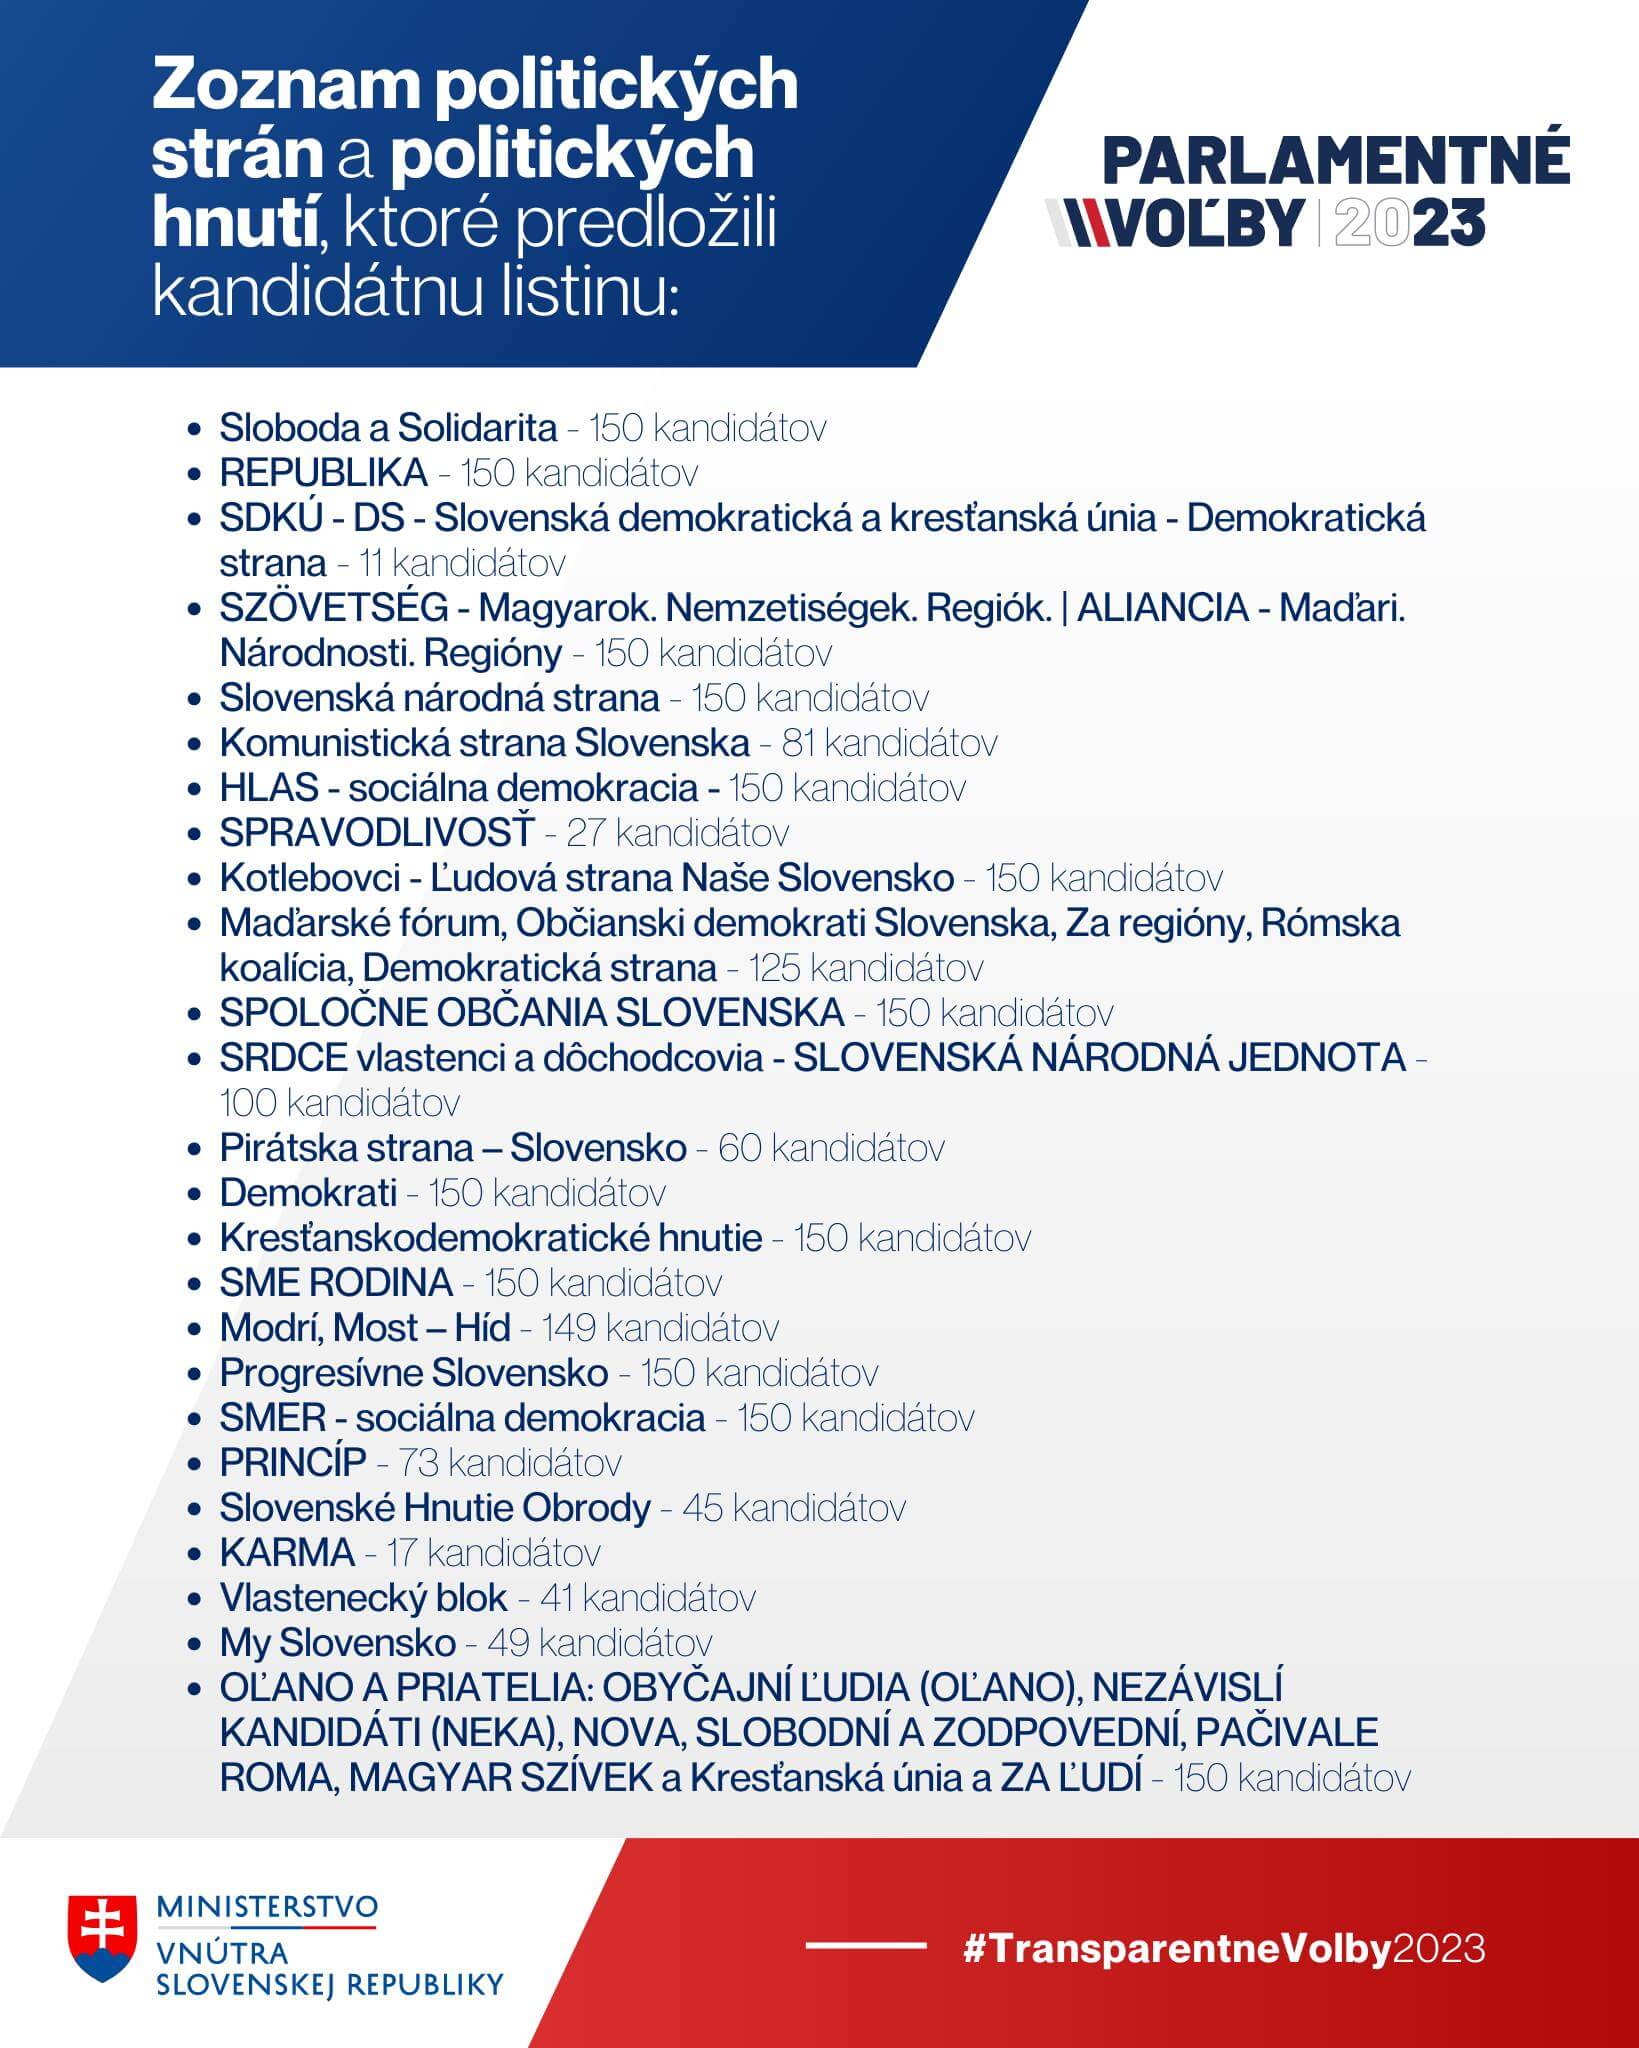 Seznam kandidujících politických stran na Slovensku